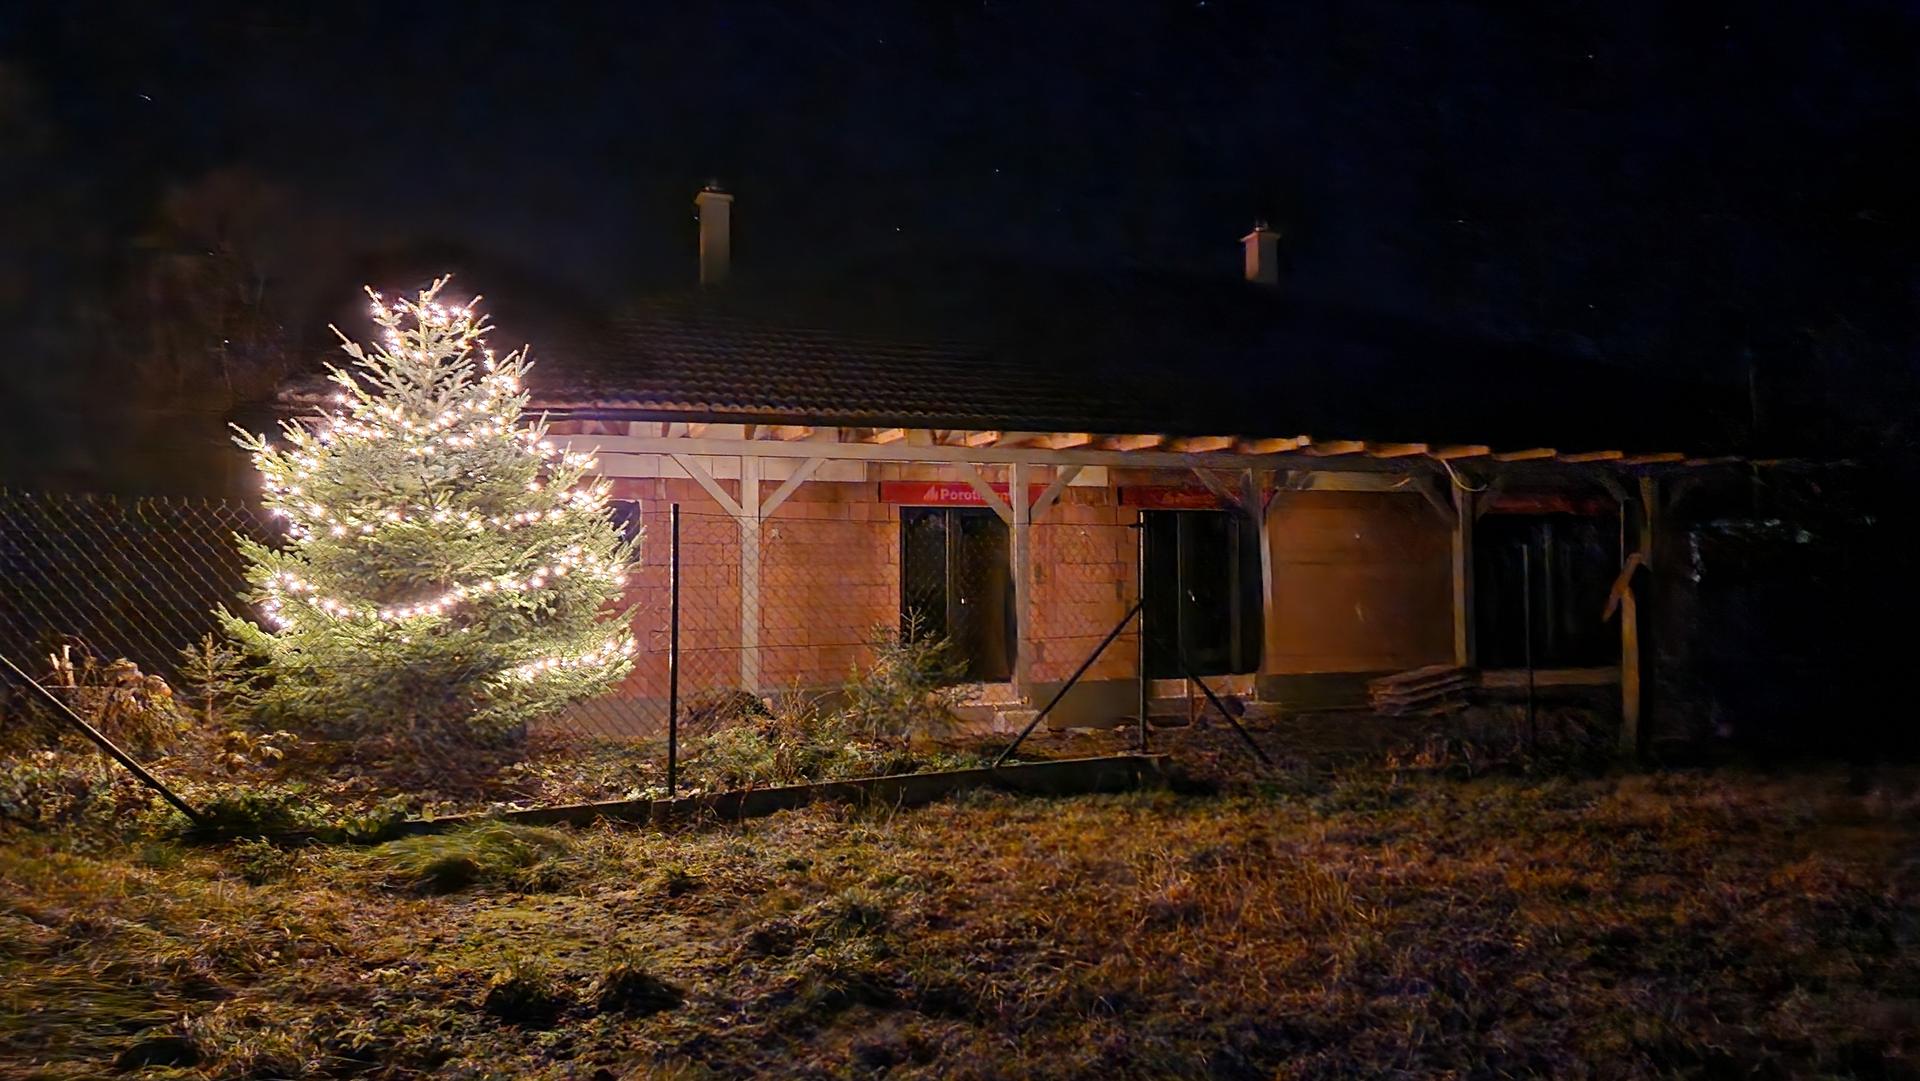 Projekt víkendové bydlení II (aneb návrat ke kořenům) - Když nemáme světýlka na domě, tak jsme si aspoň udělali radost a nasvítili stromek :-)